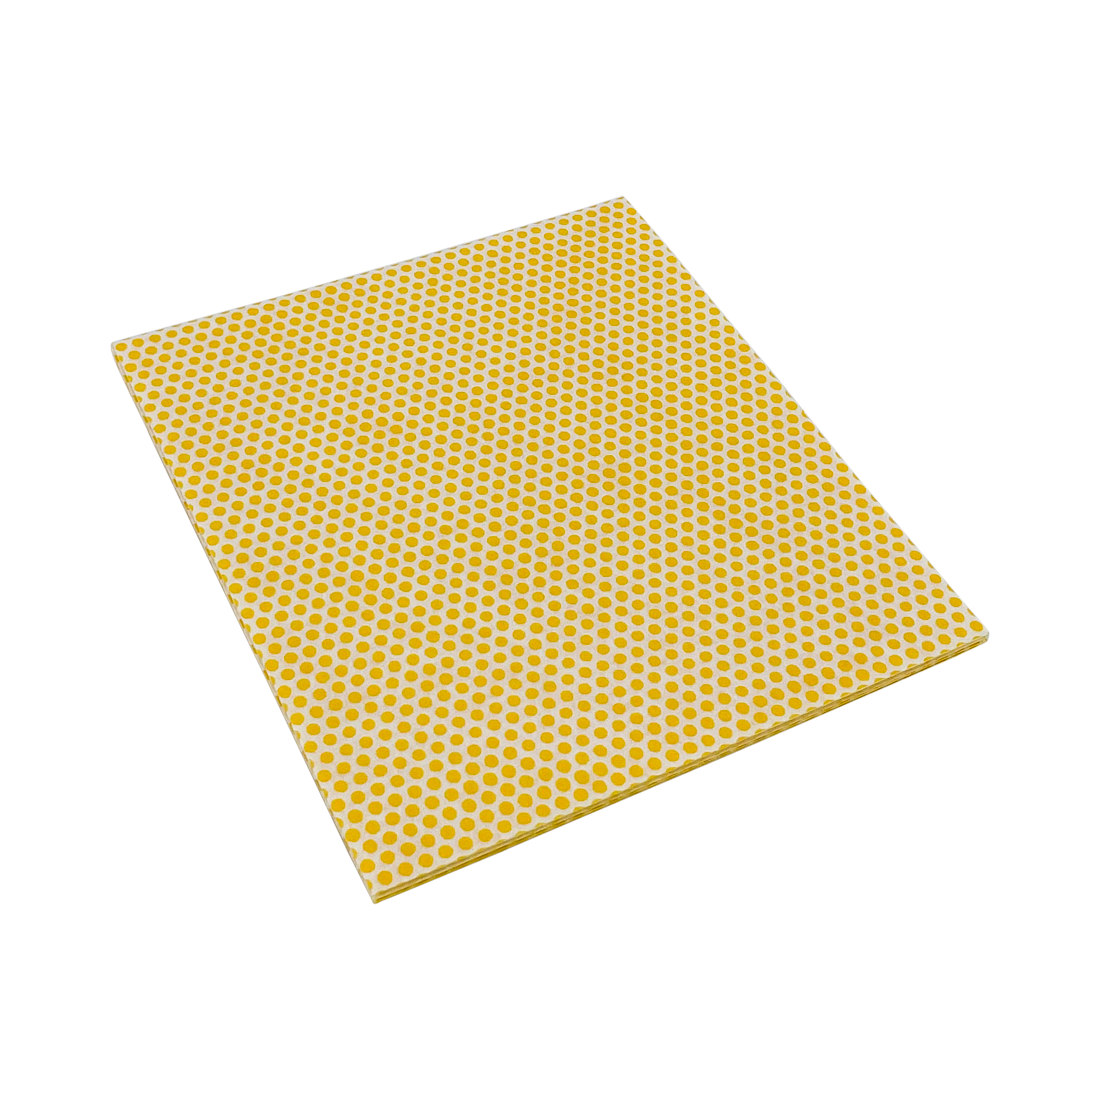 Profi-Wischtuch / Universaltuch 35 x 38 cm, gelb, mit Latex-Noppenstruktur, 10 Stück/Packung